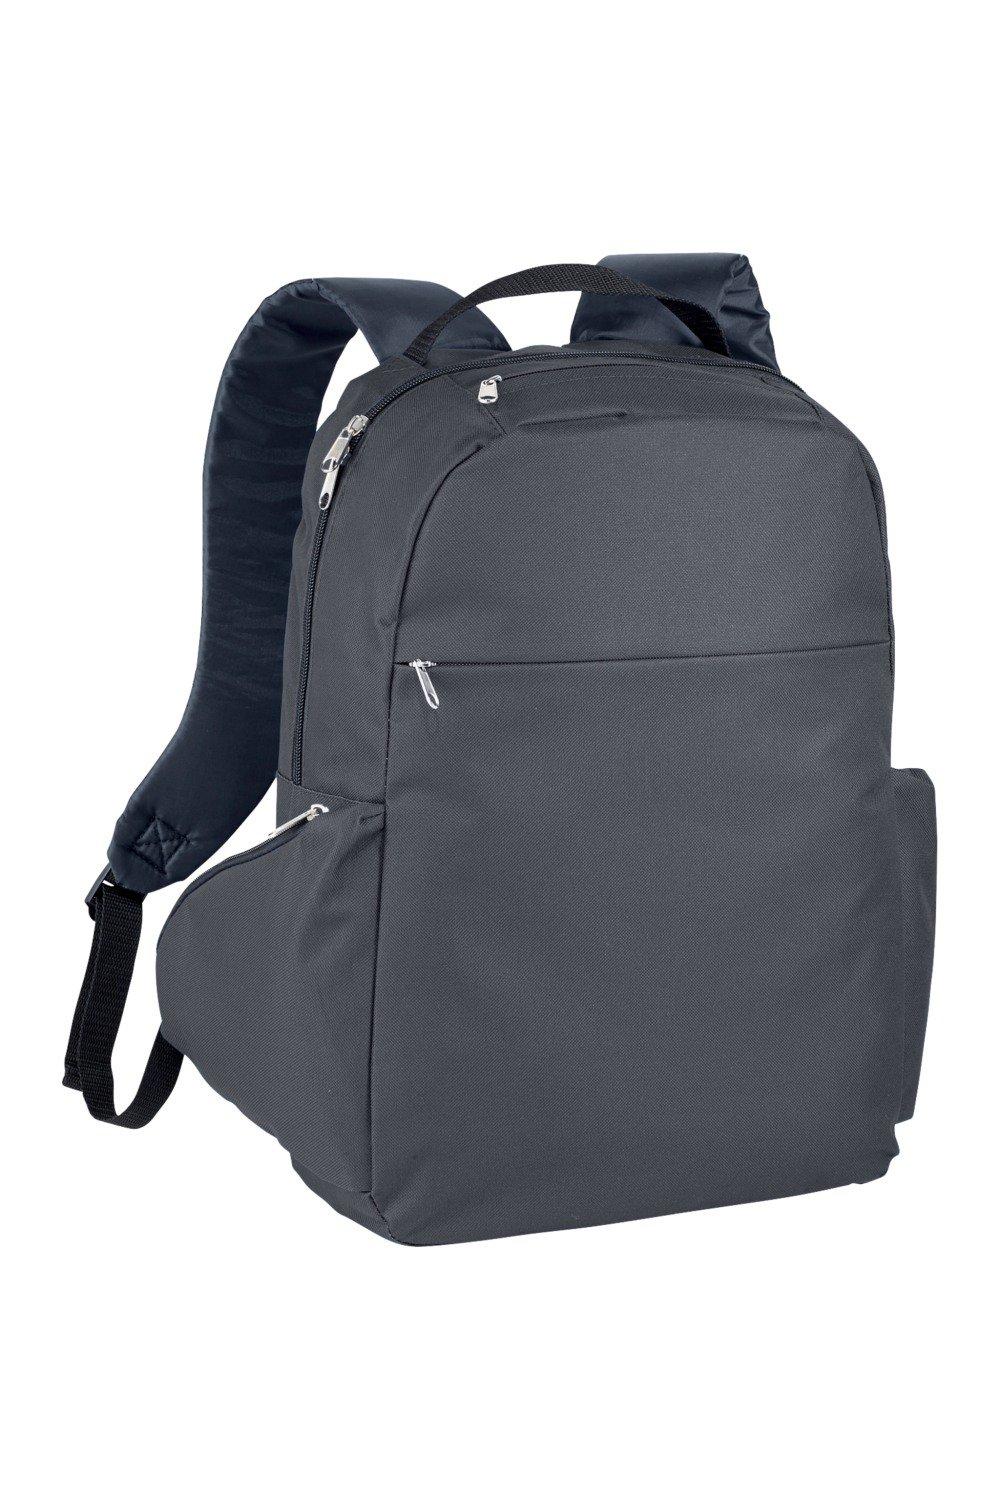 Тонкий рюкзак для ноутбука с диагональю 15,6 дюйма Bullet, серый рюкзак для ноутбука seasons 15 6 дюйма антивандальный msp3010 серый